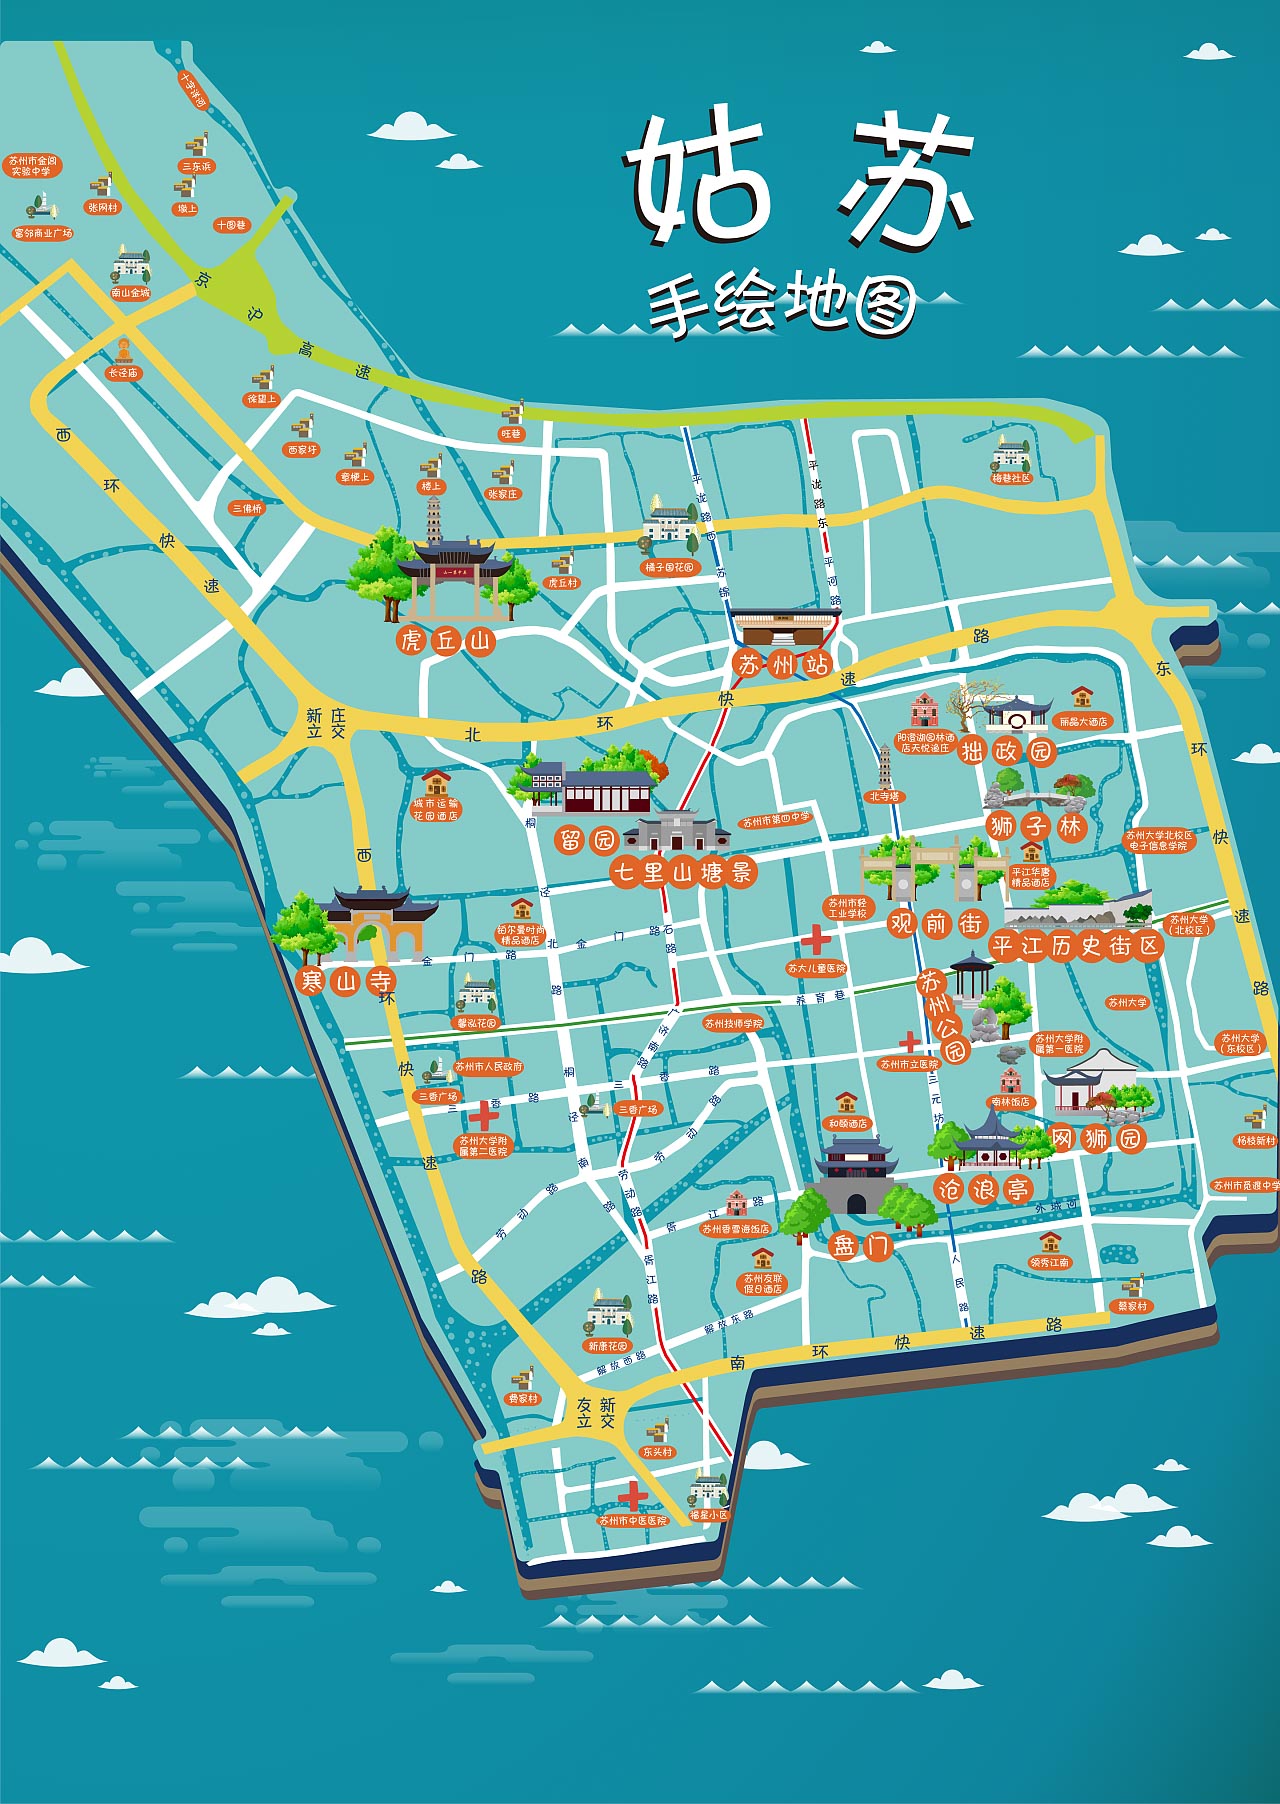 道滘镇手绘地图景区的文化宝藏